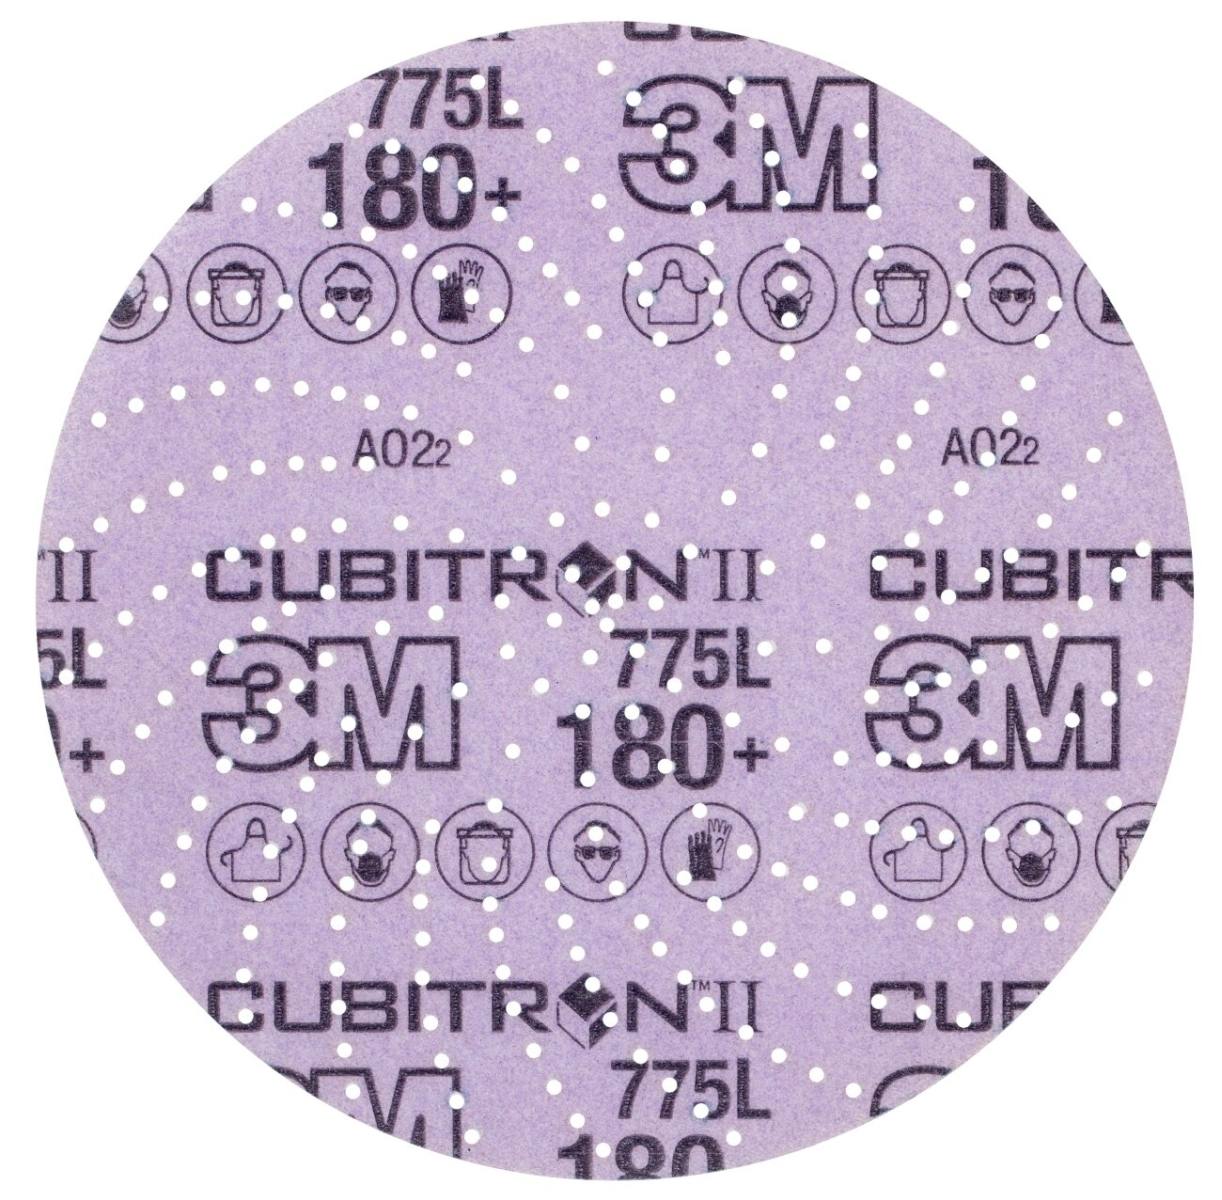 3M Cubitron II Disco de película Hookit 775L, 150 mm, 180+, multiagujeros #739401